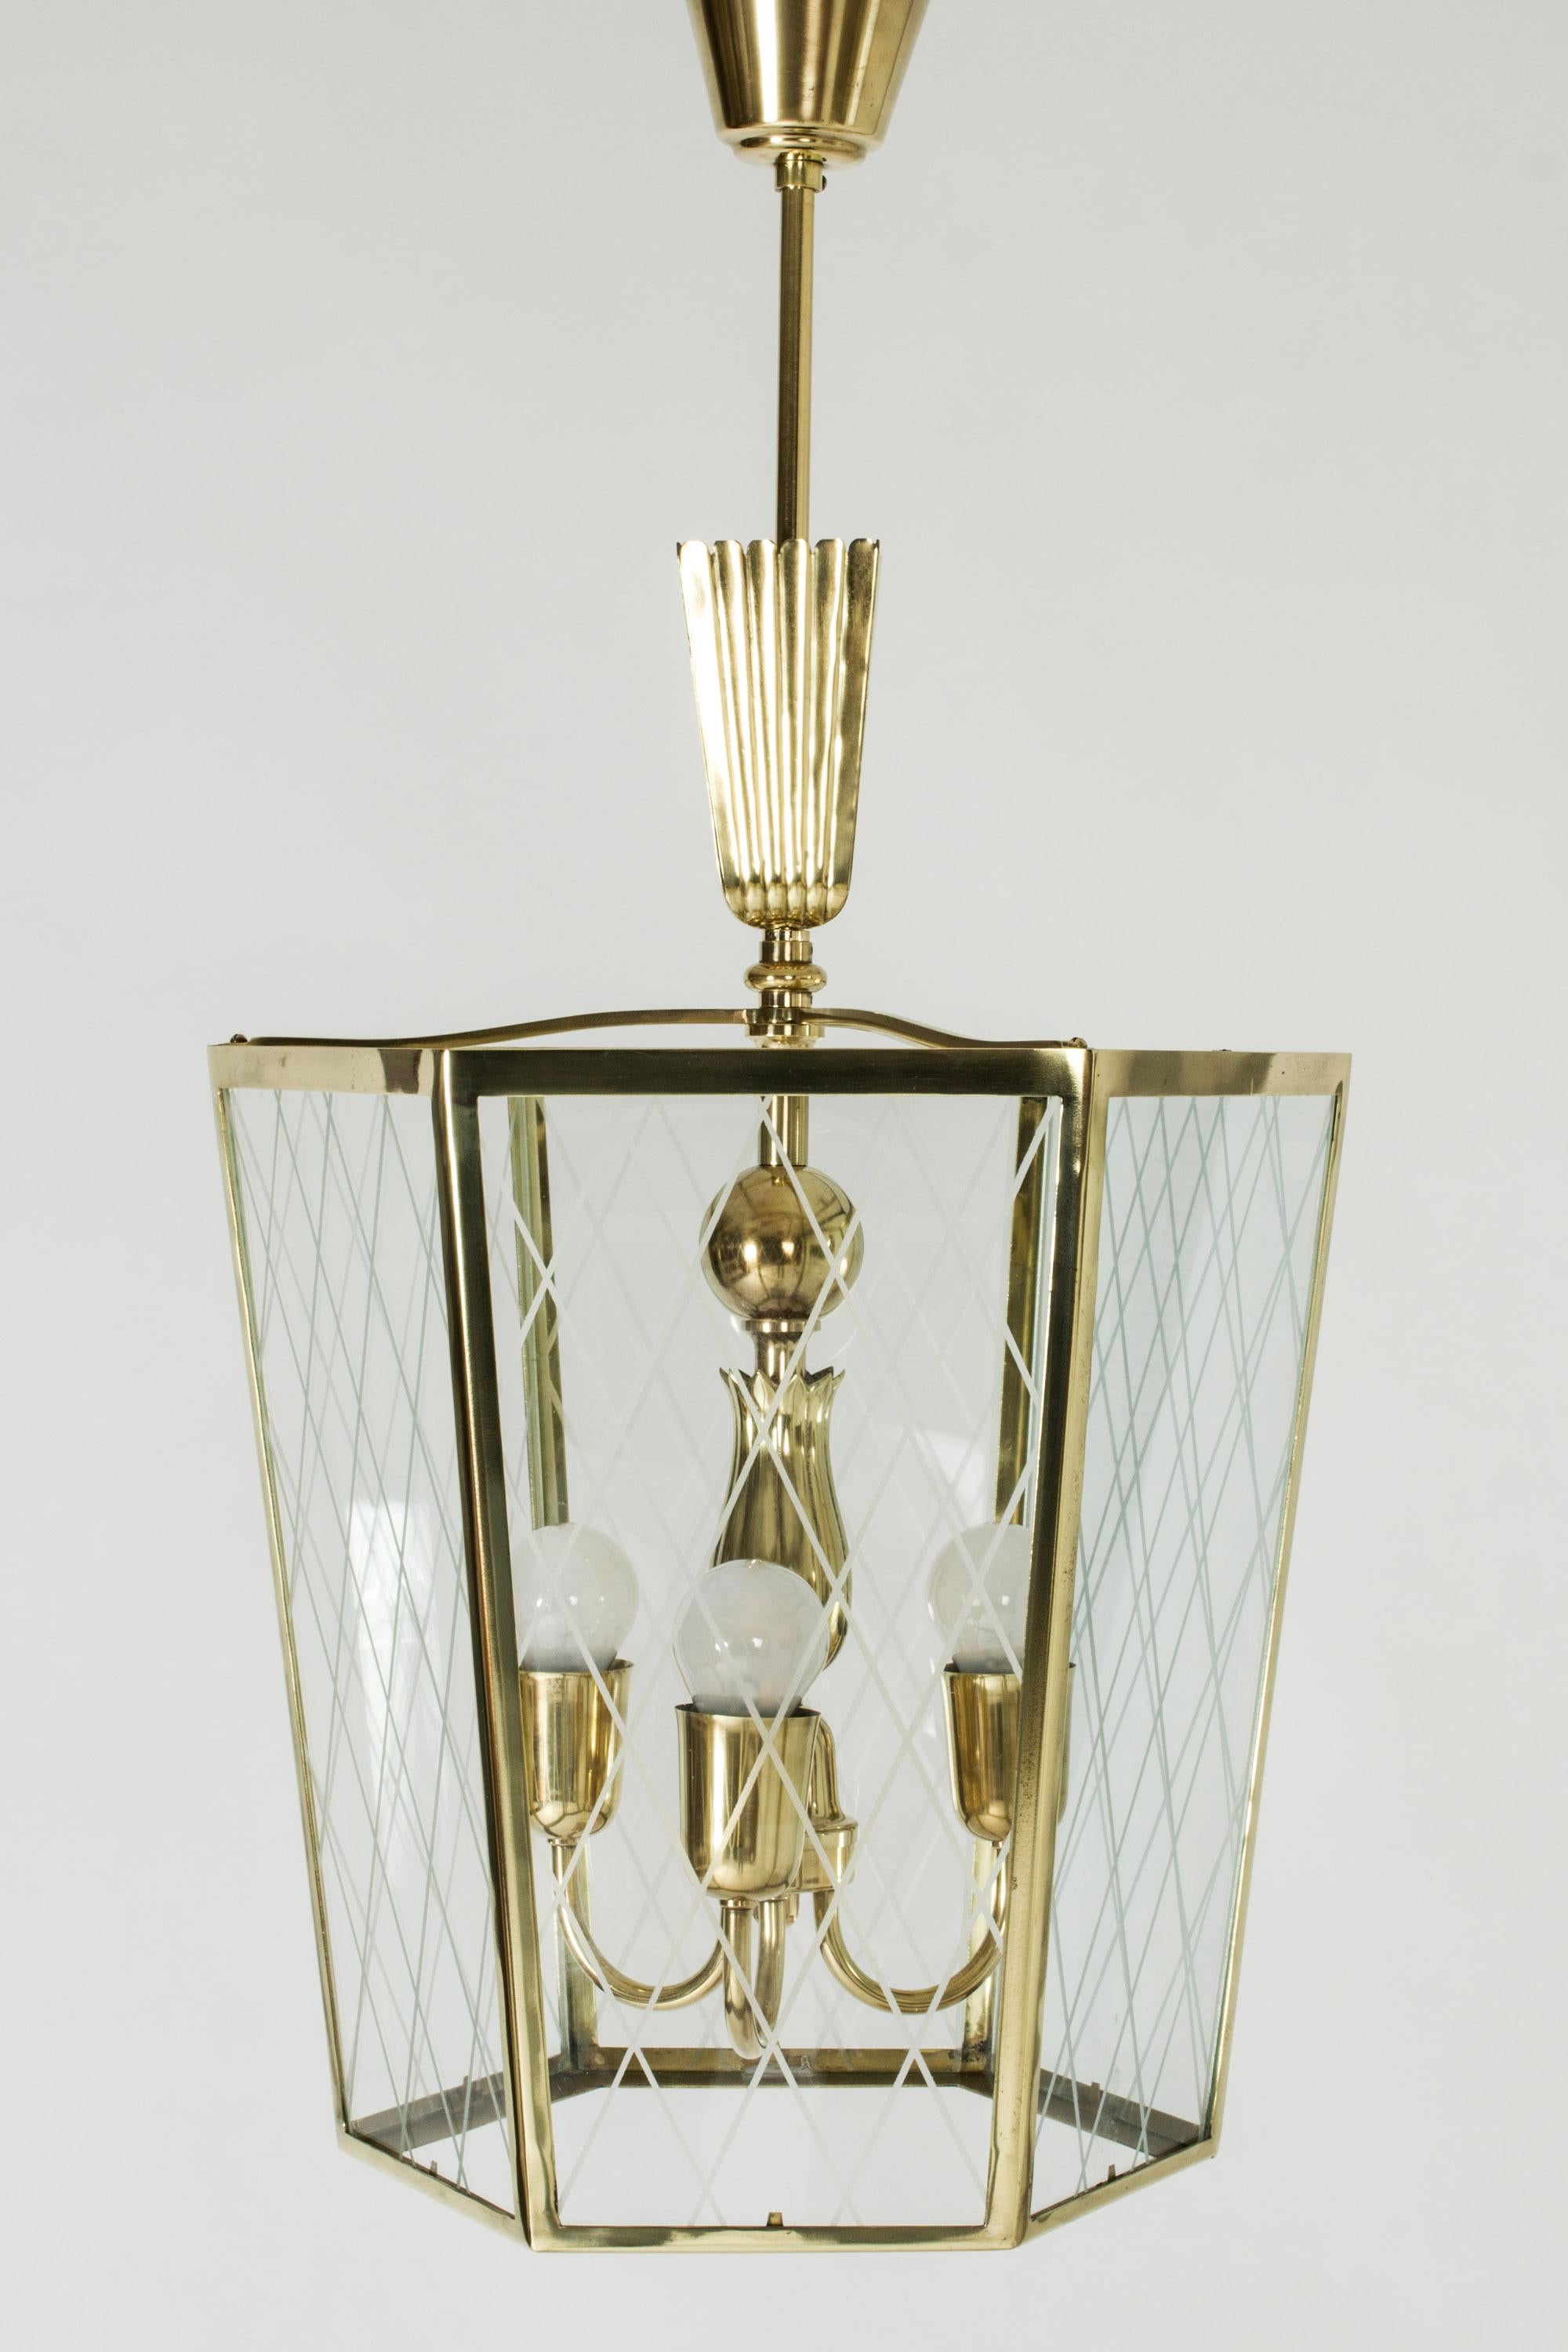 Elegant plafonnier moderne suédois, en laiton, avec de jolis détails. Côtés en verre avec décor de bandes givrées en forme de losange.